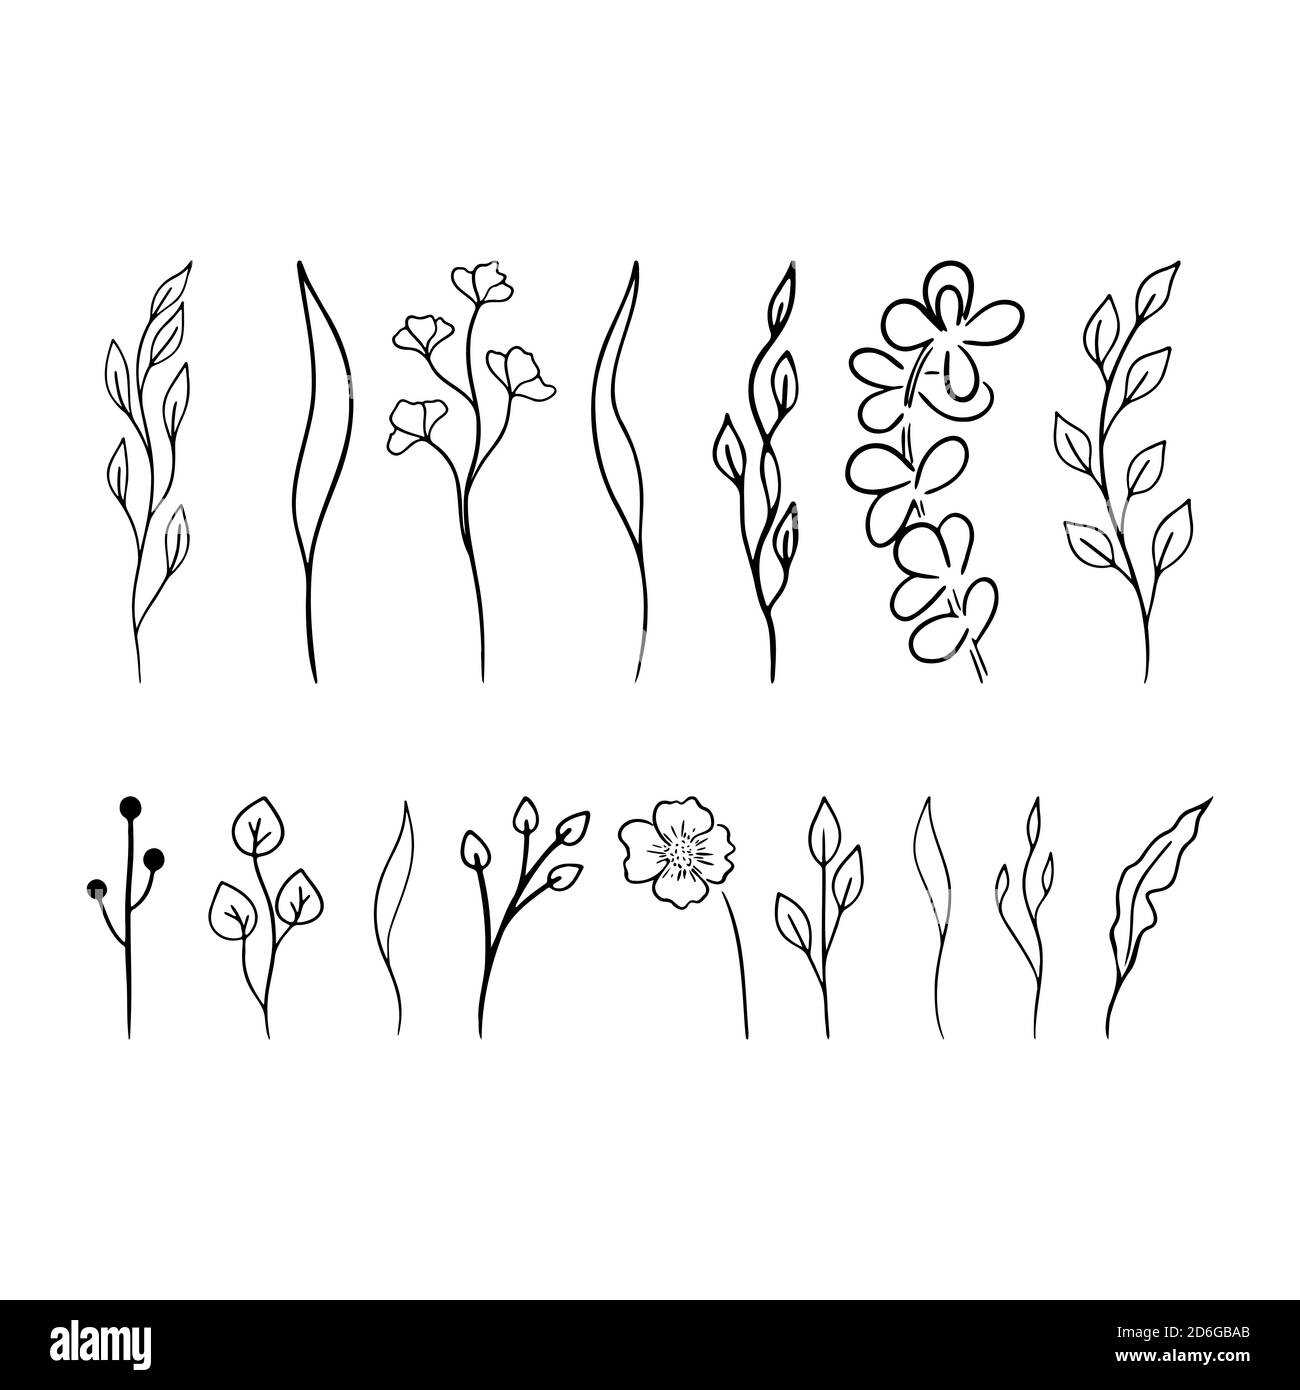 Doodle Blumenzweig. Vektor für schwarze Lamellen eingestellt. Einfache Blumenkollektion. Handgezeichnete Eco-Symbole. . Vektorgrafik Stock Vektor